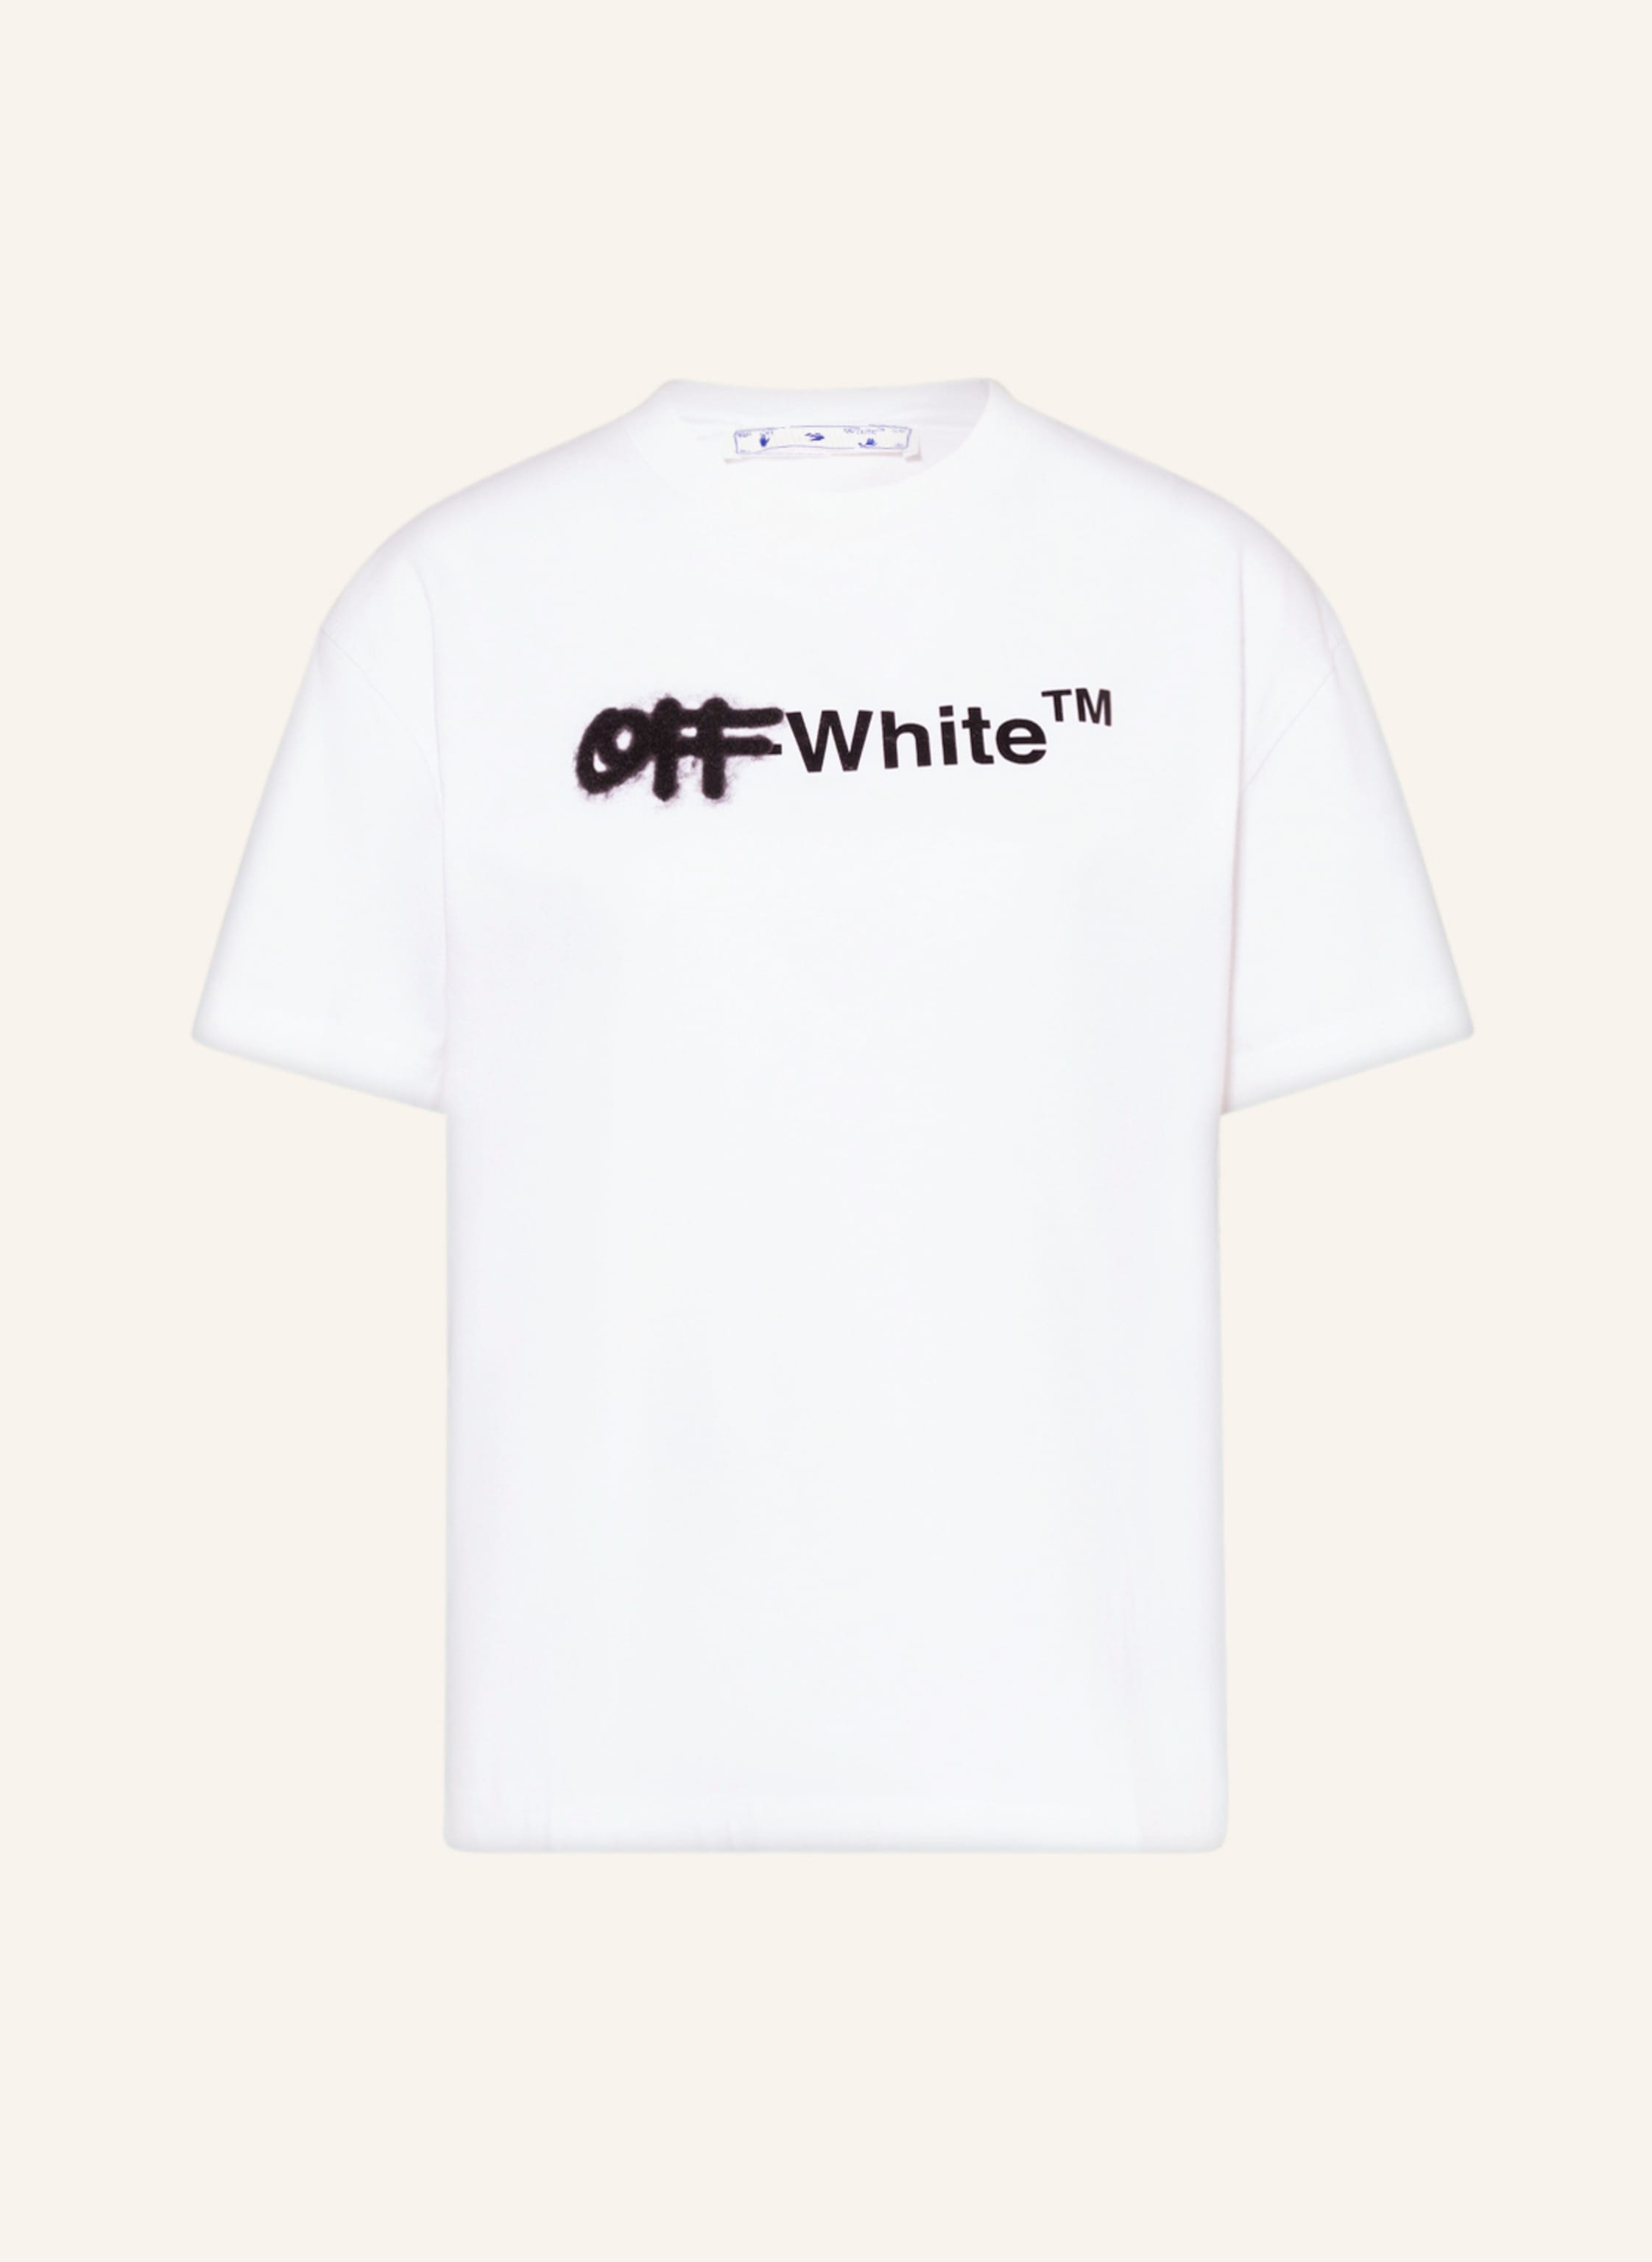 off-white(オフホワイト)Tシャツ